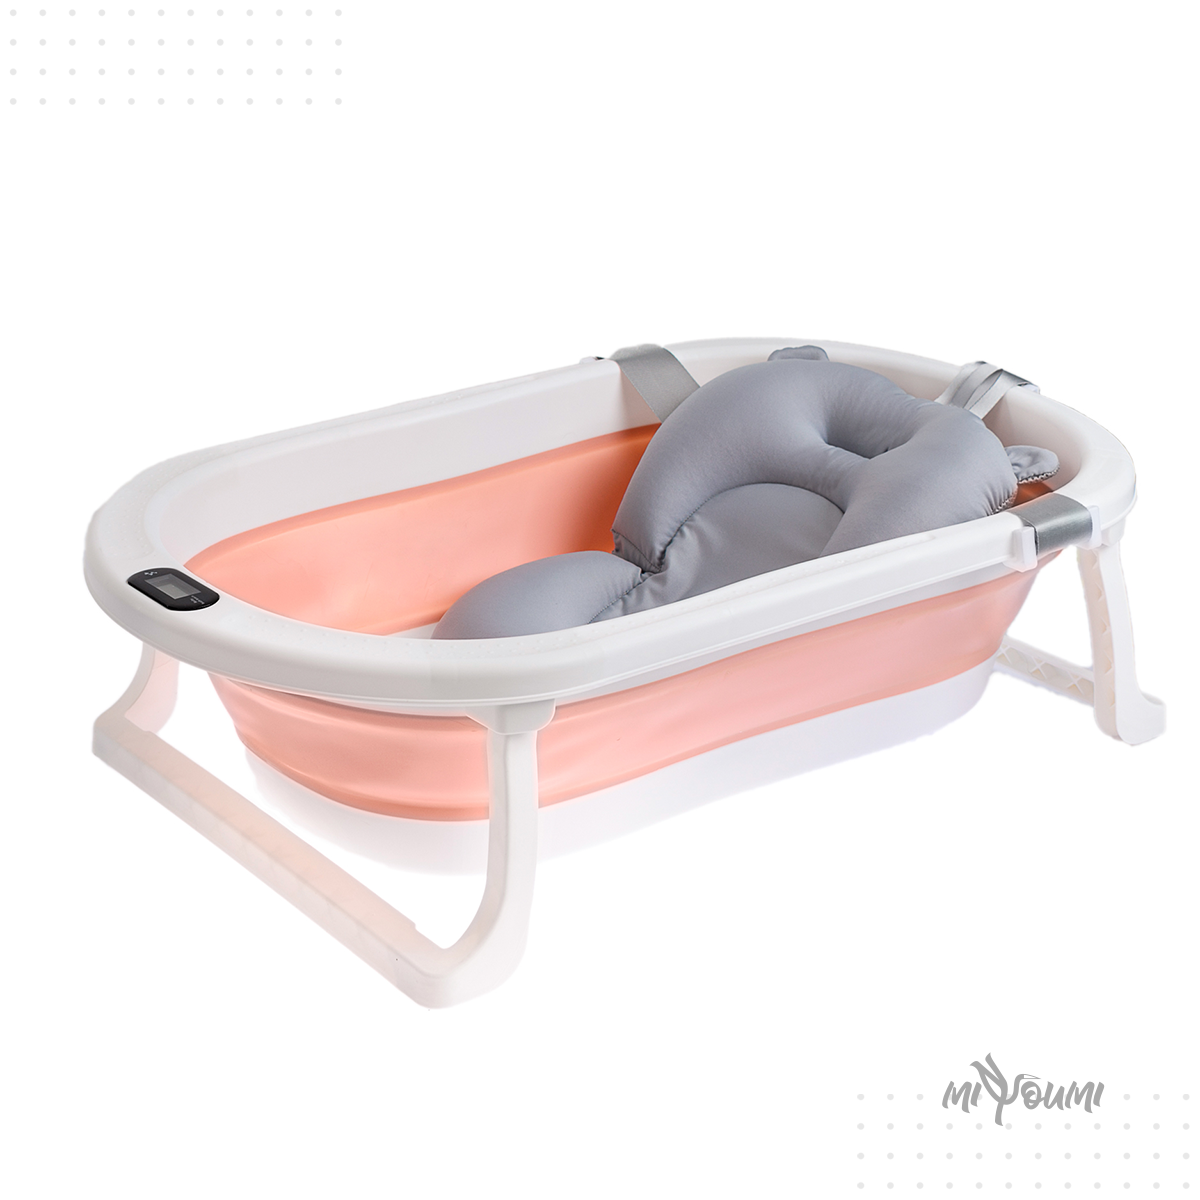 Ванночка для новорожденных Miyoumi с матрасиком и термометром складная - Blush - фото 18